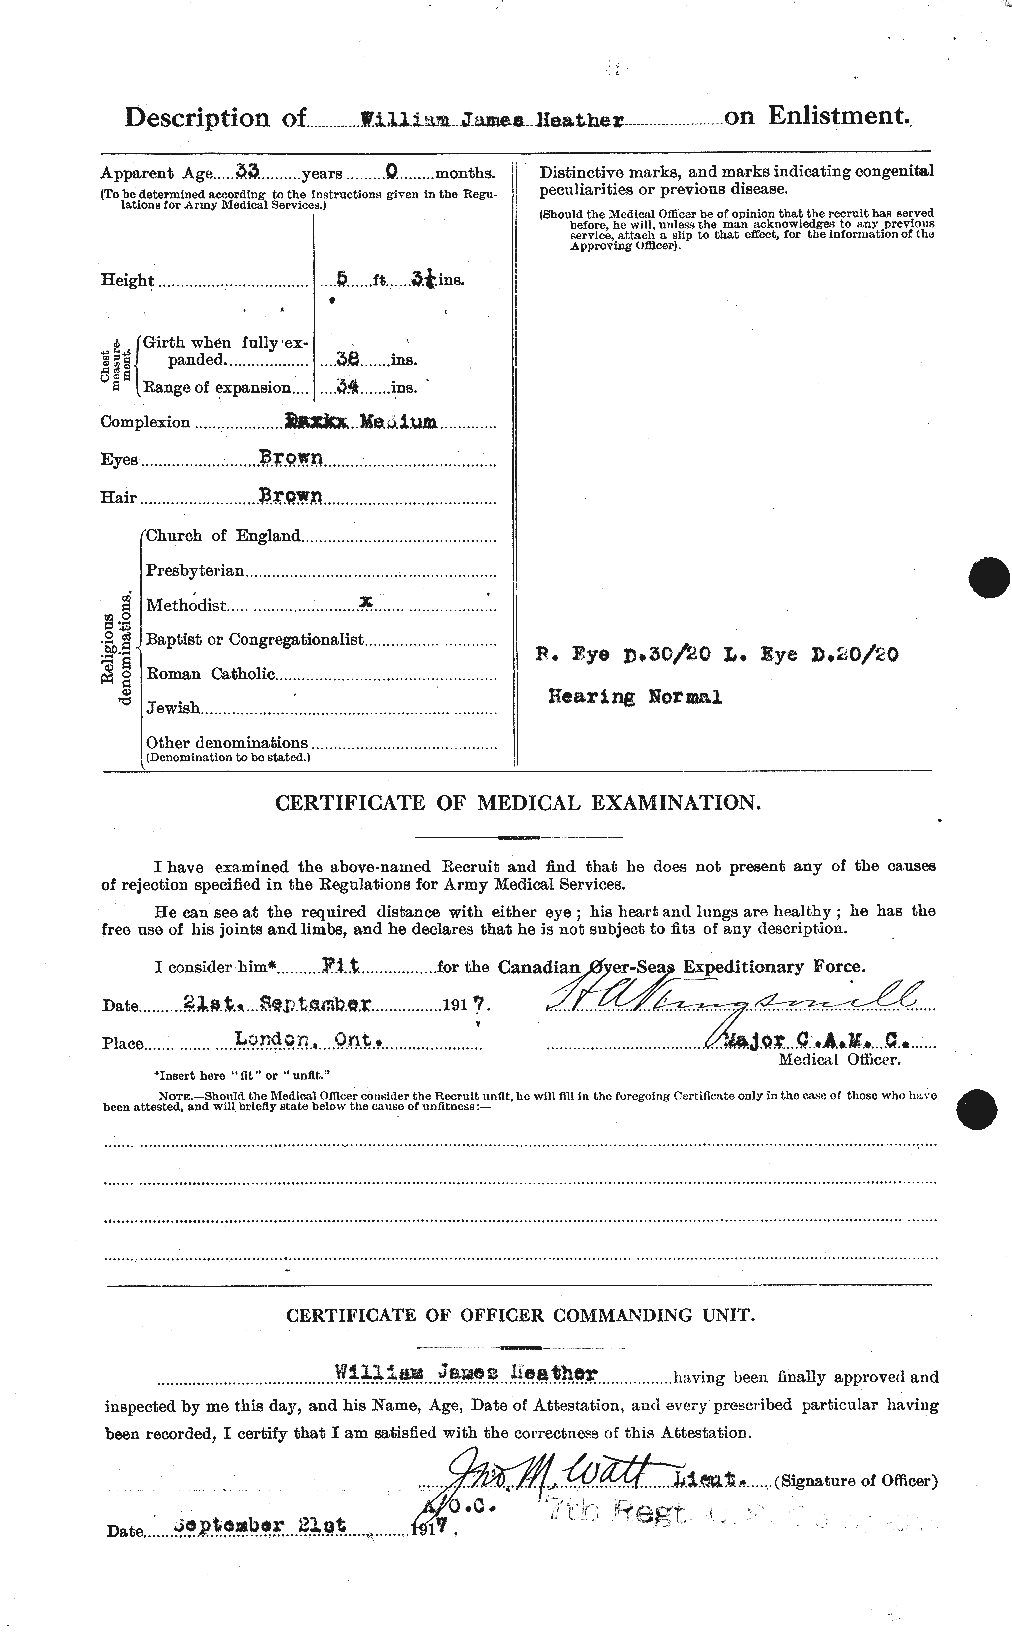 Dossiers du Personnel de la Première Guerre mondiale - CEC 386383b